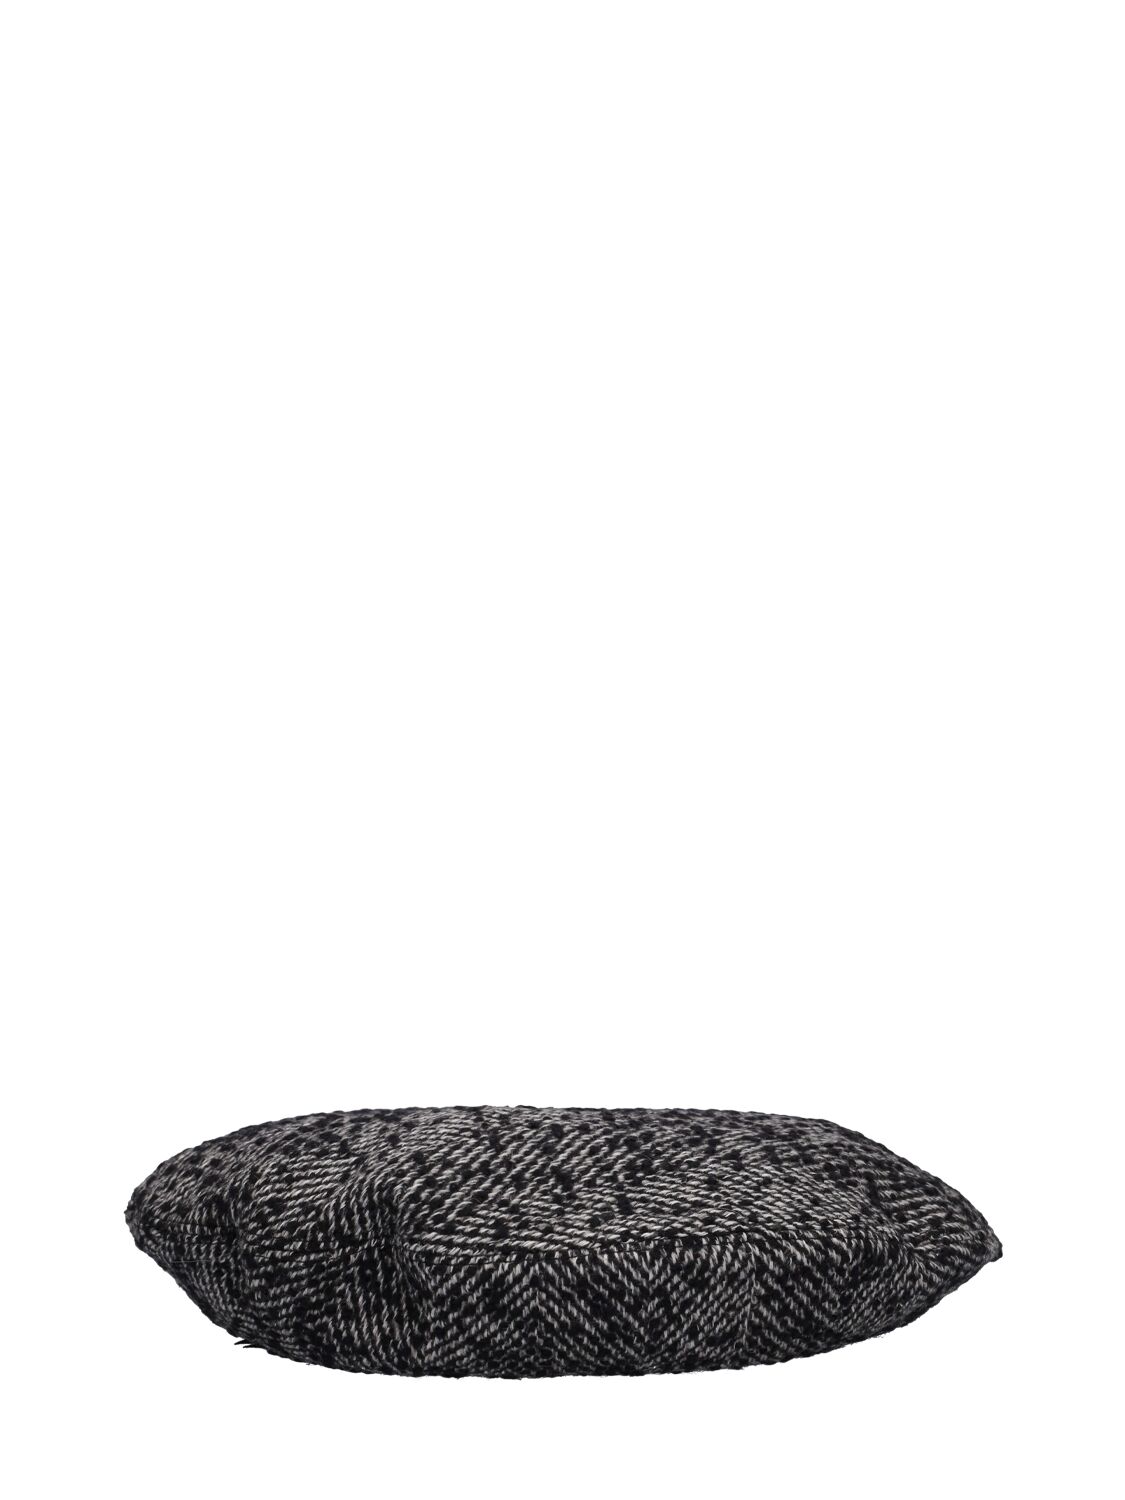 Image of Wool Blend Tweed Hat